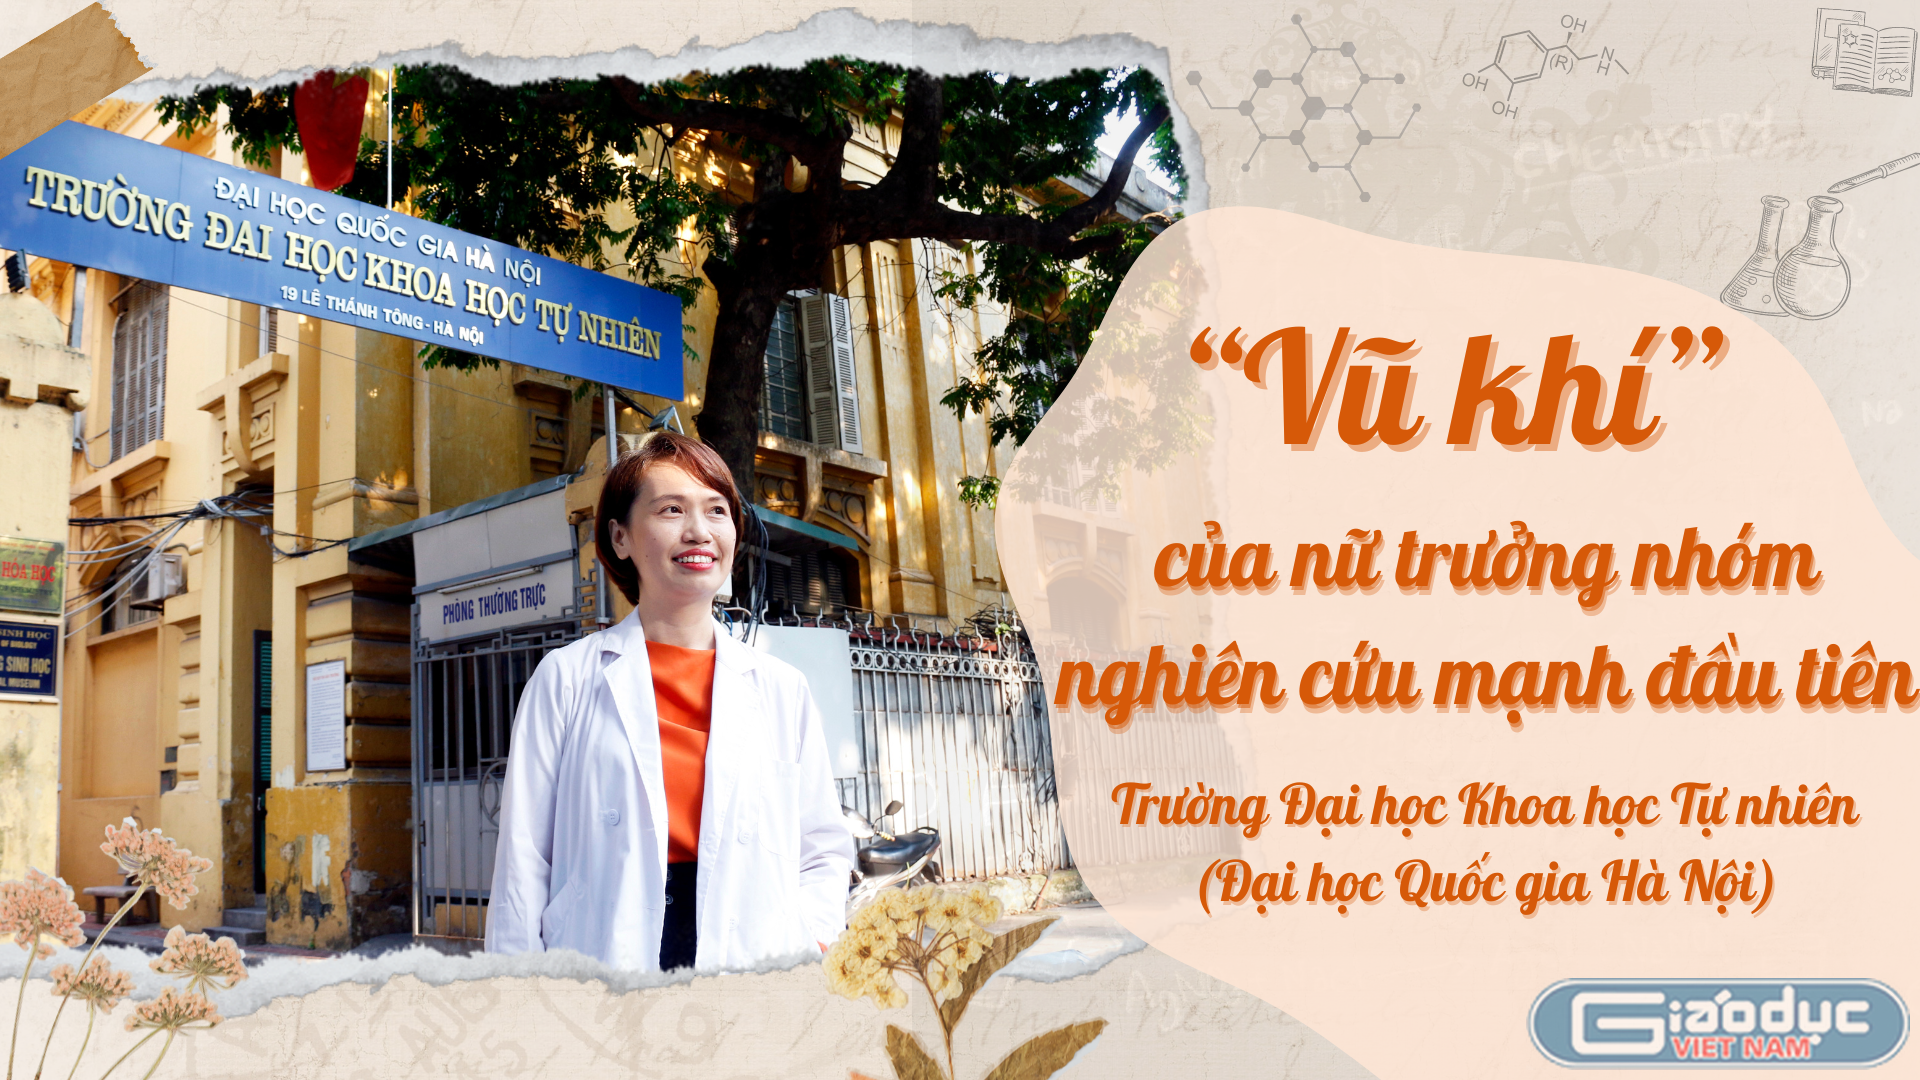 PGS TS Phạm Thị Ngọc Mai: "Thế mạnh lớn nhất của tôi chính là sự lạc quan"